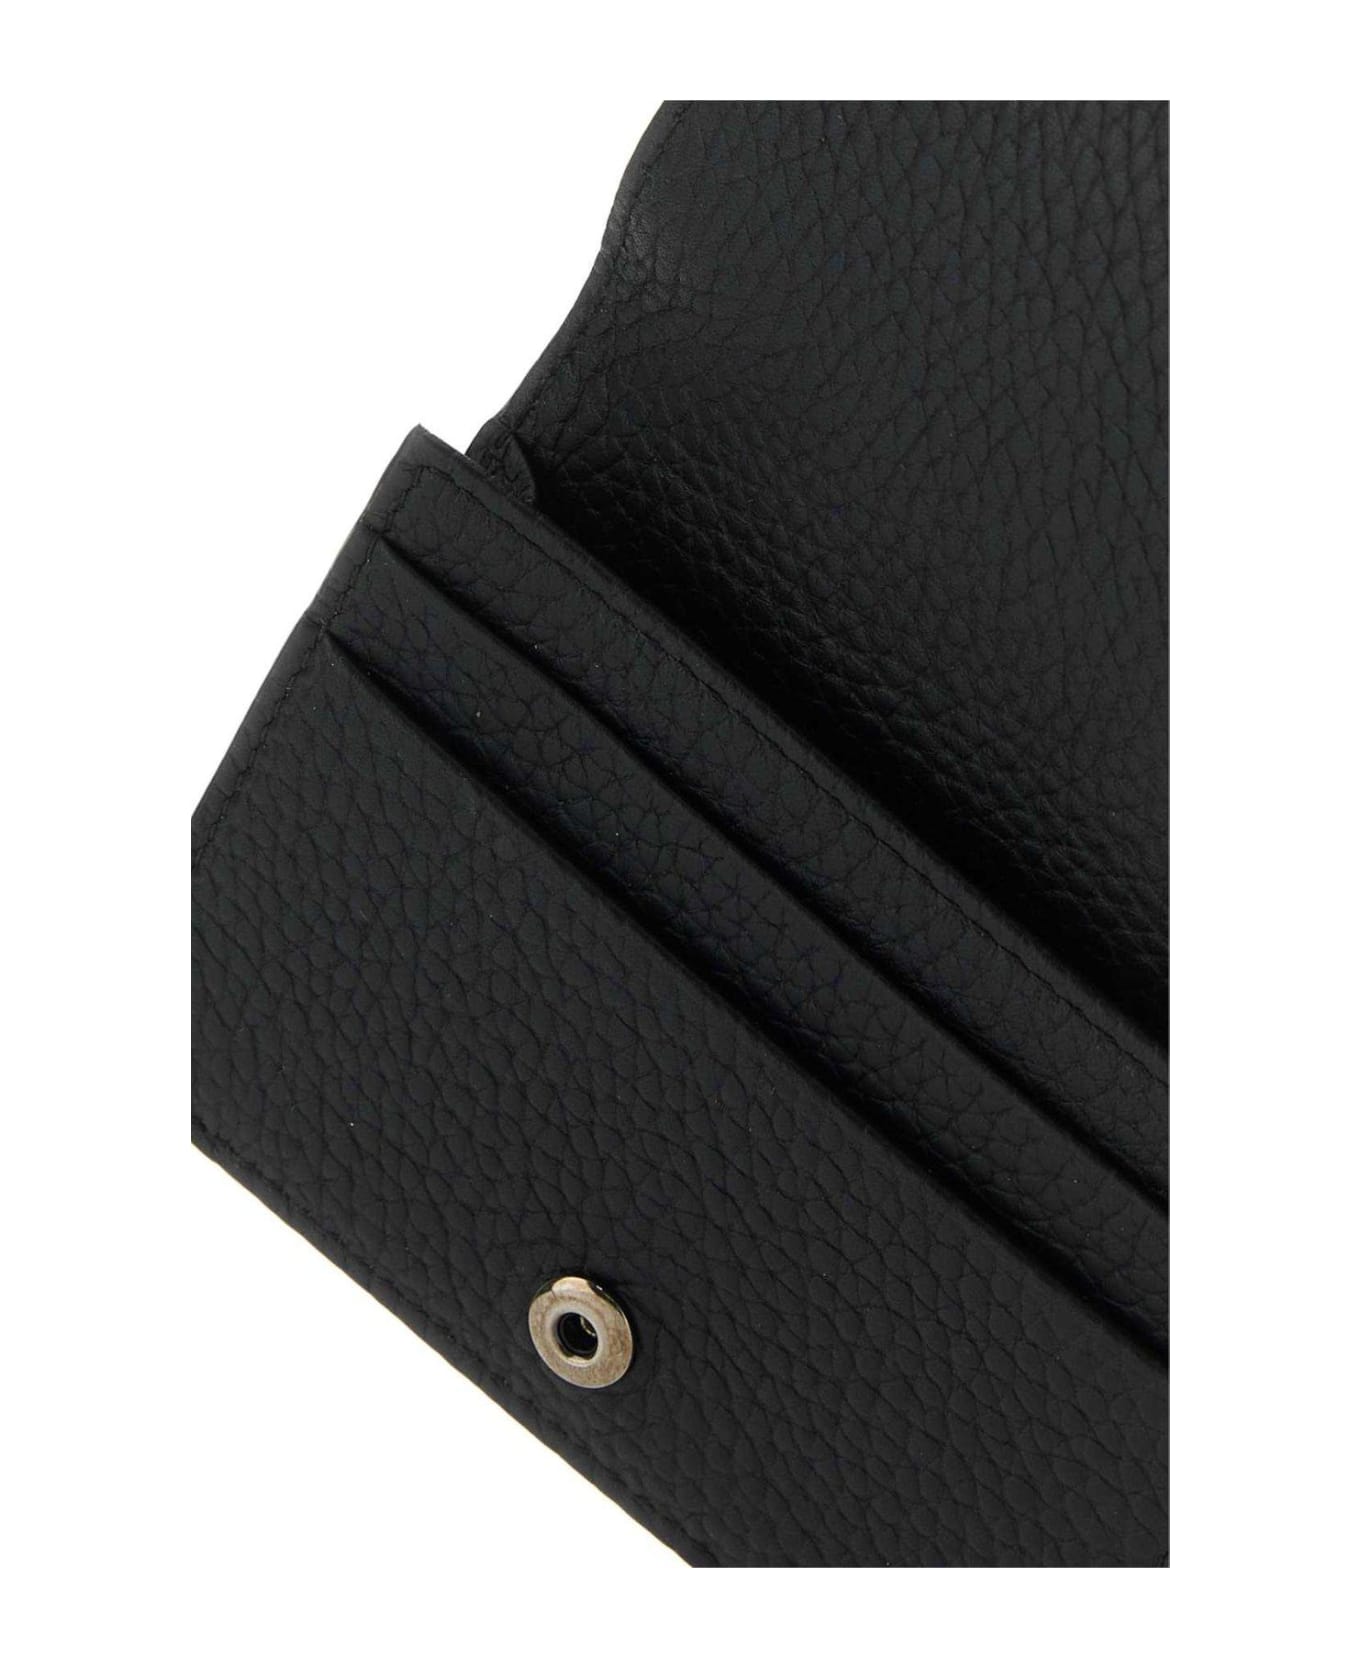 Dolce & Gabbana Wallet - NERO 財布